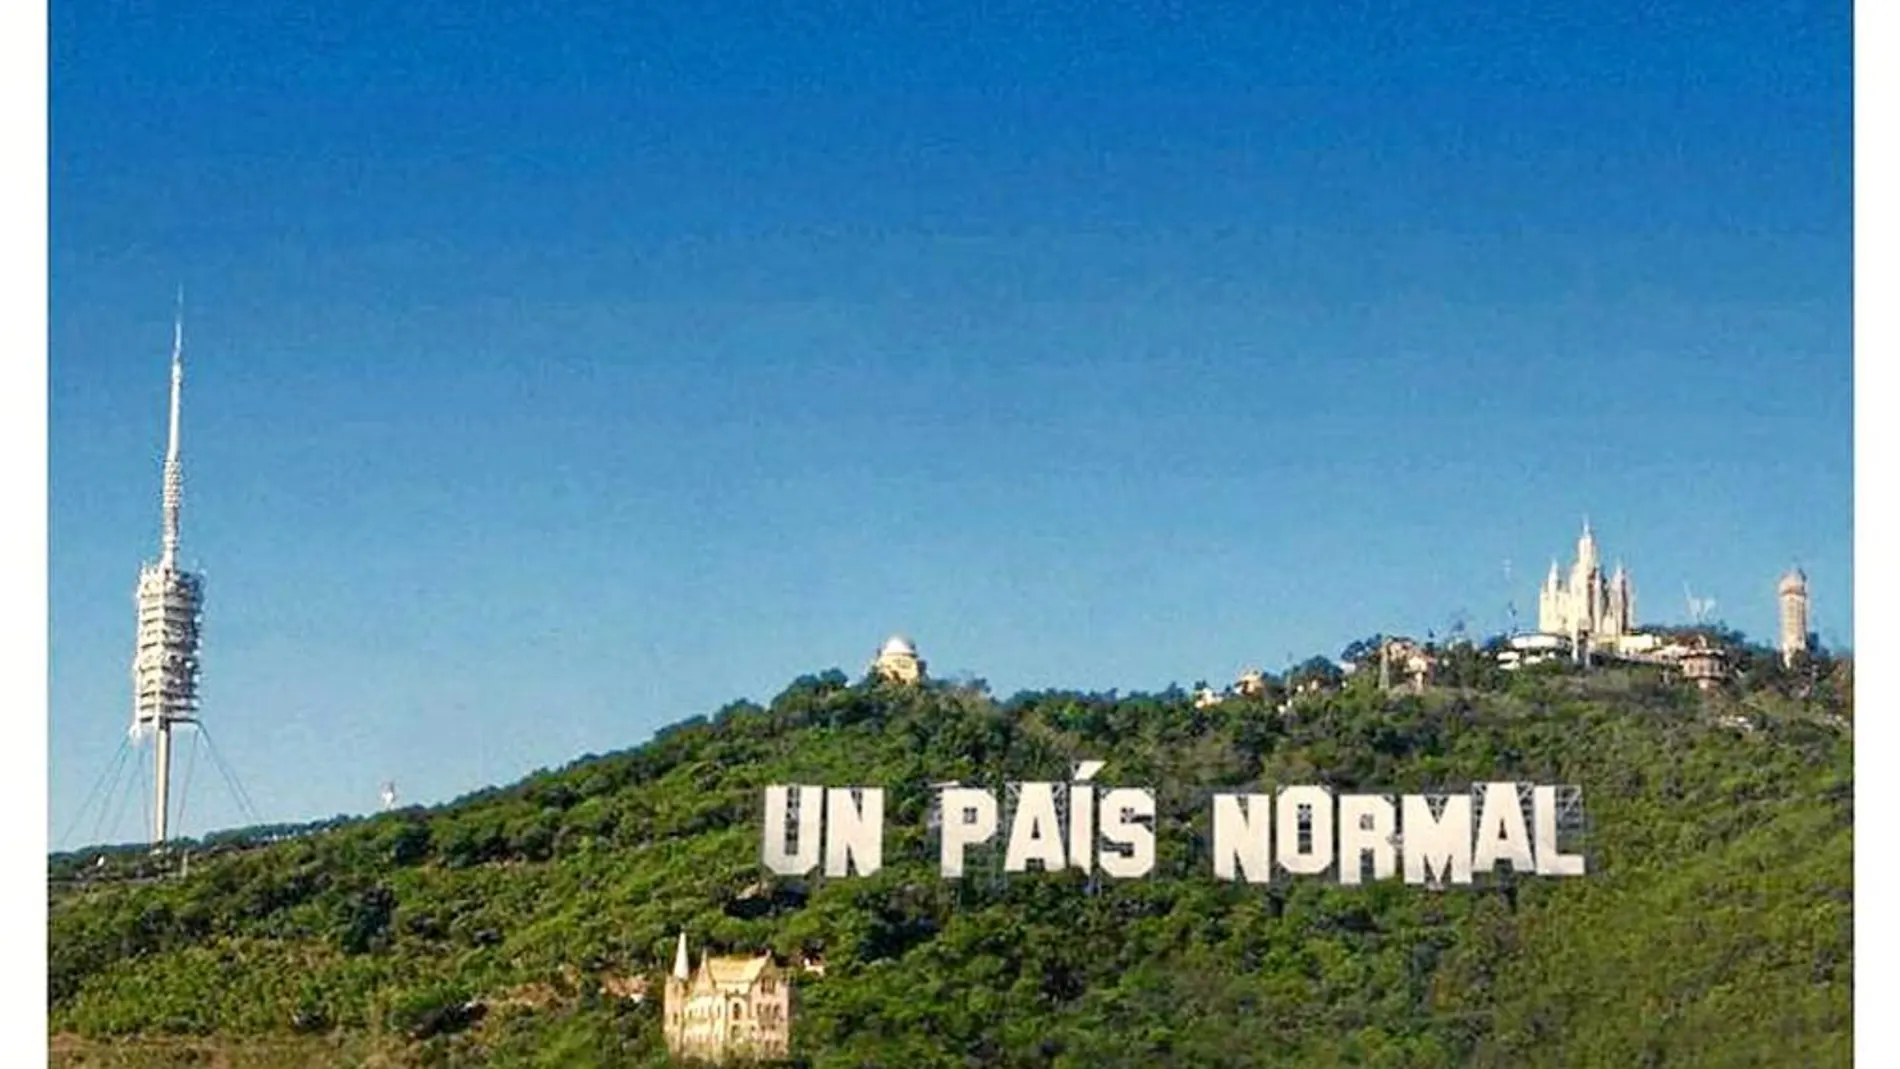 La ANC lanzó una campaña inspirada en Hollywood a favor del «sí» con la montaña de Collserola como telón de fondo